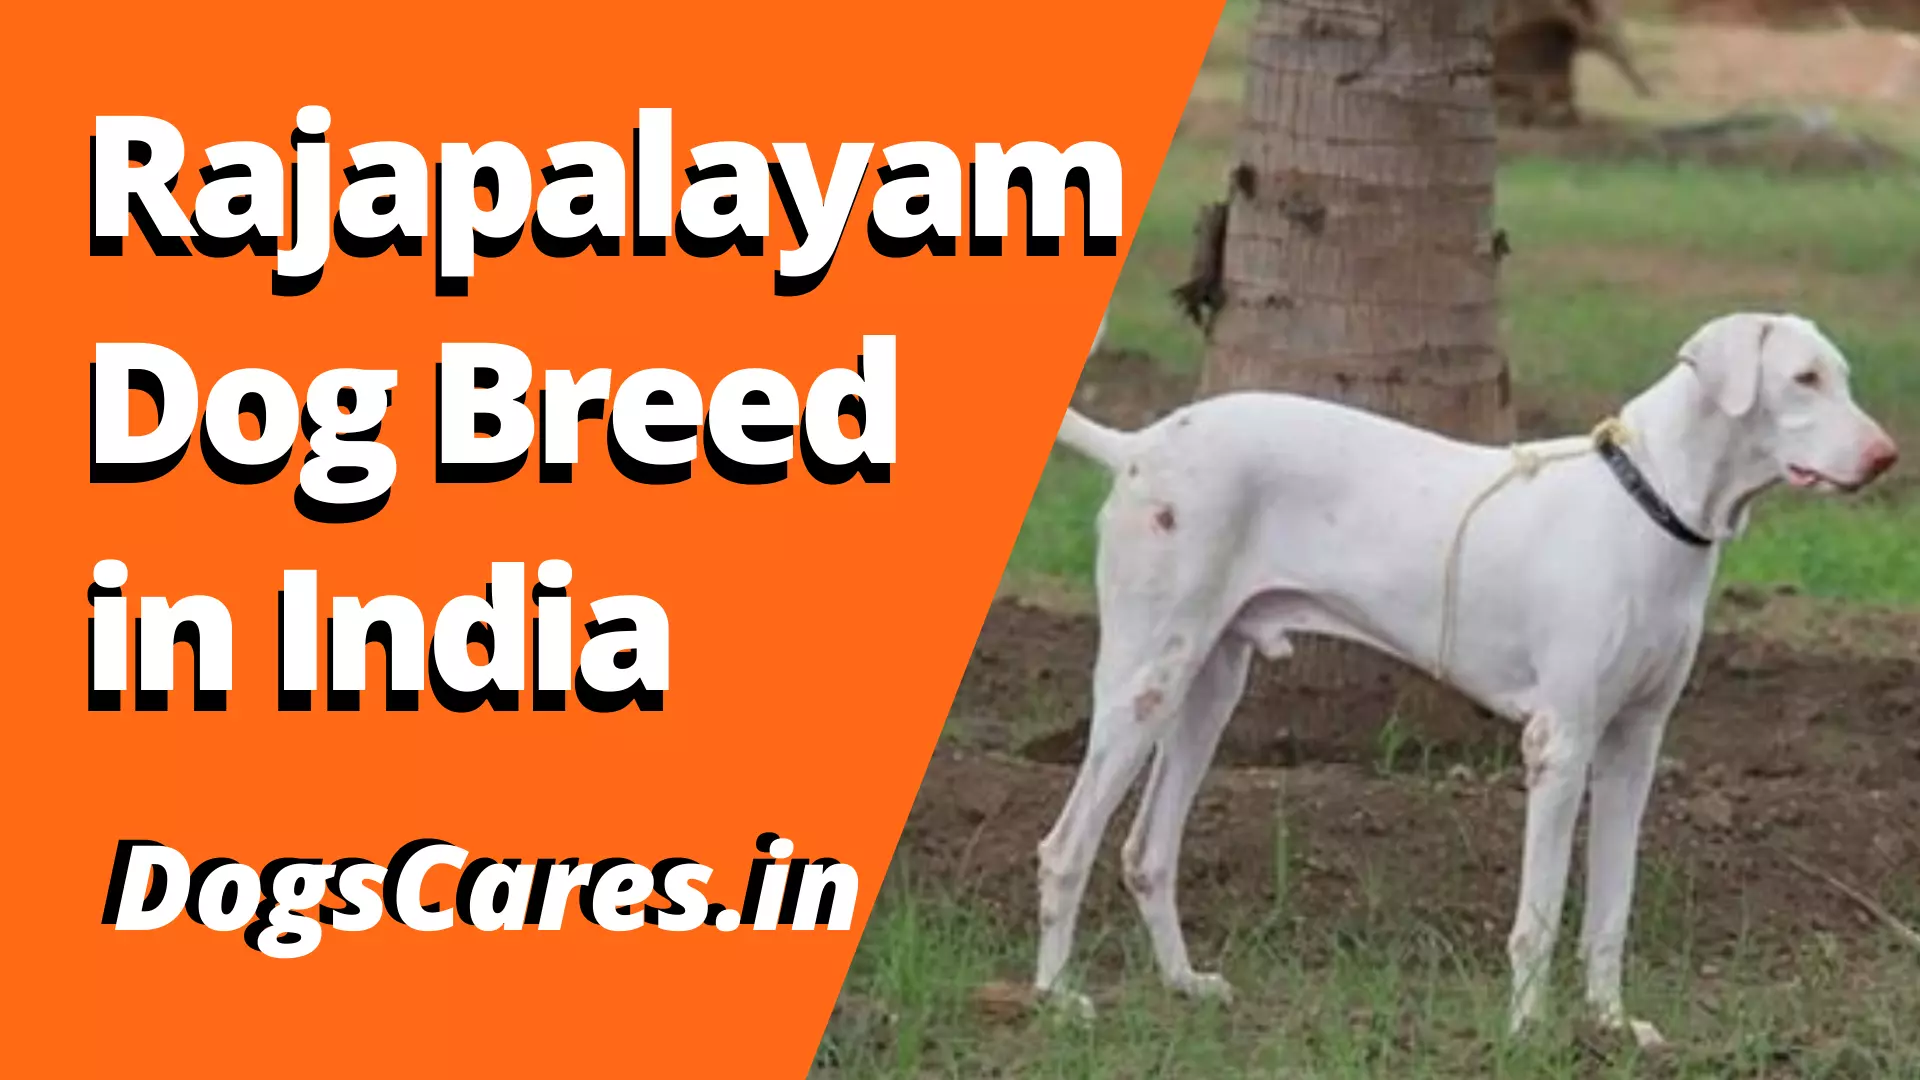 Rajapalayam Dog Breed